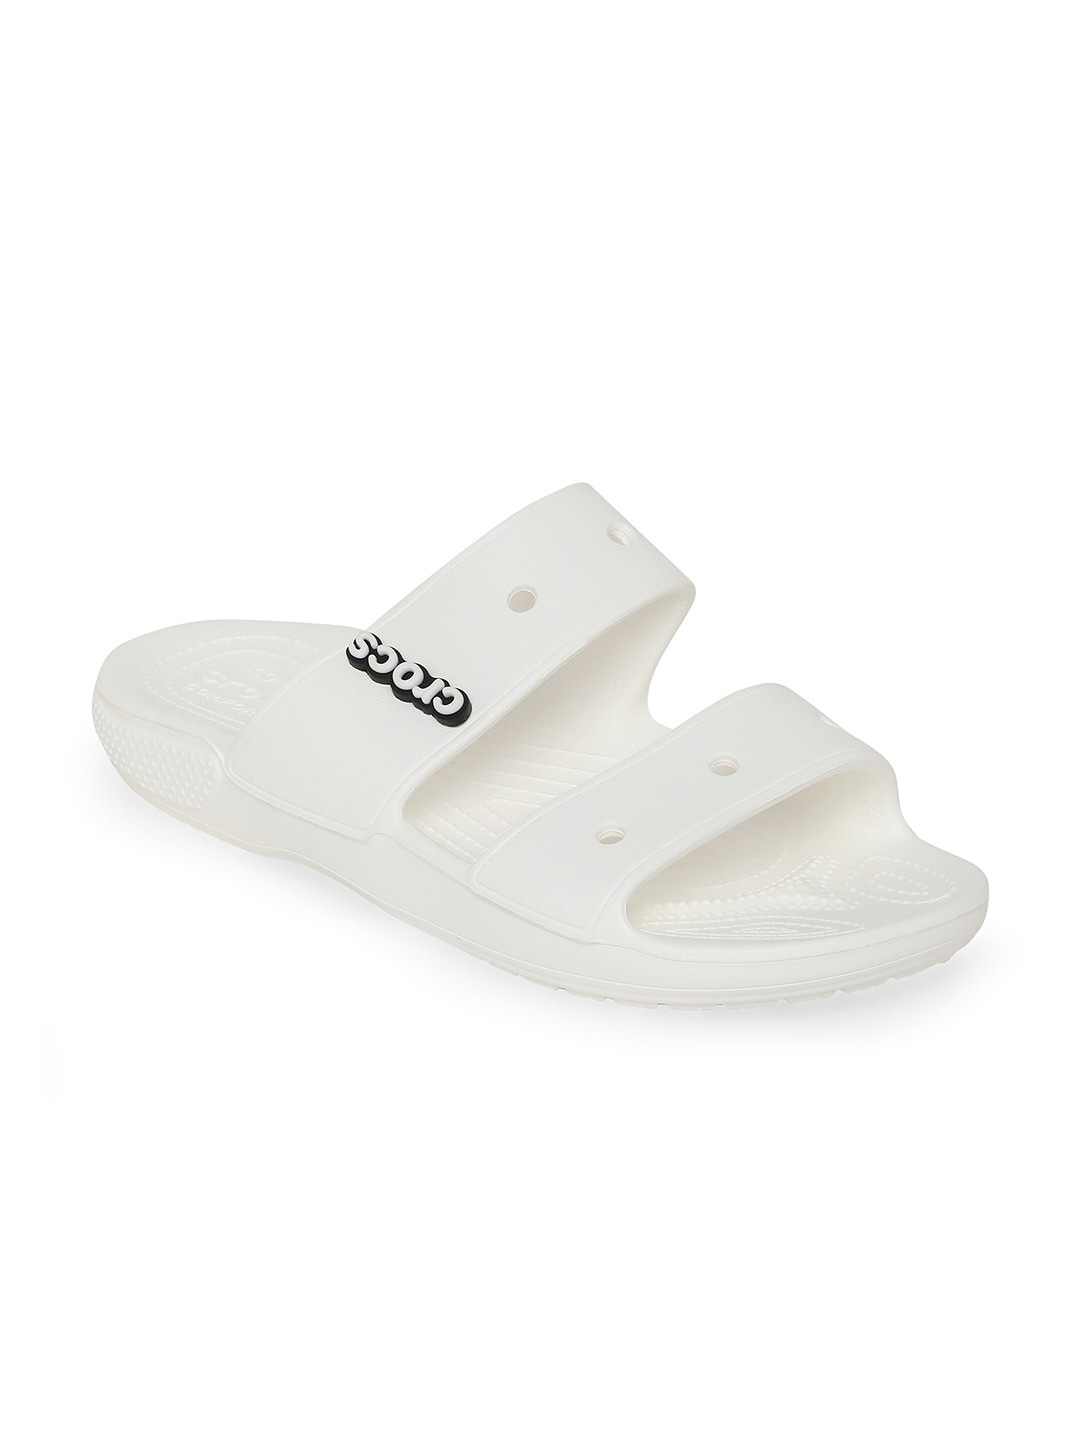 Crocs Classic  Unisex White  Black Comfort Sandals Price in India